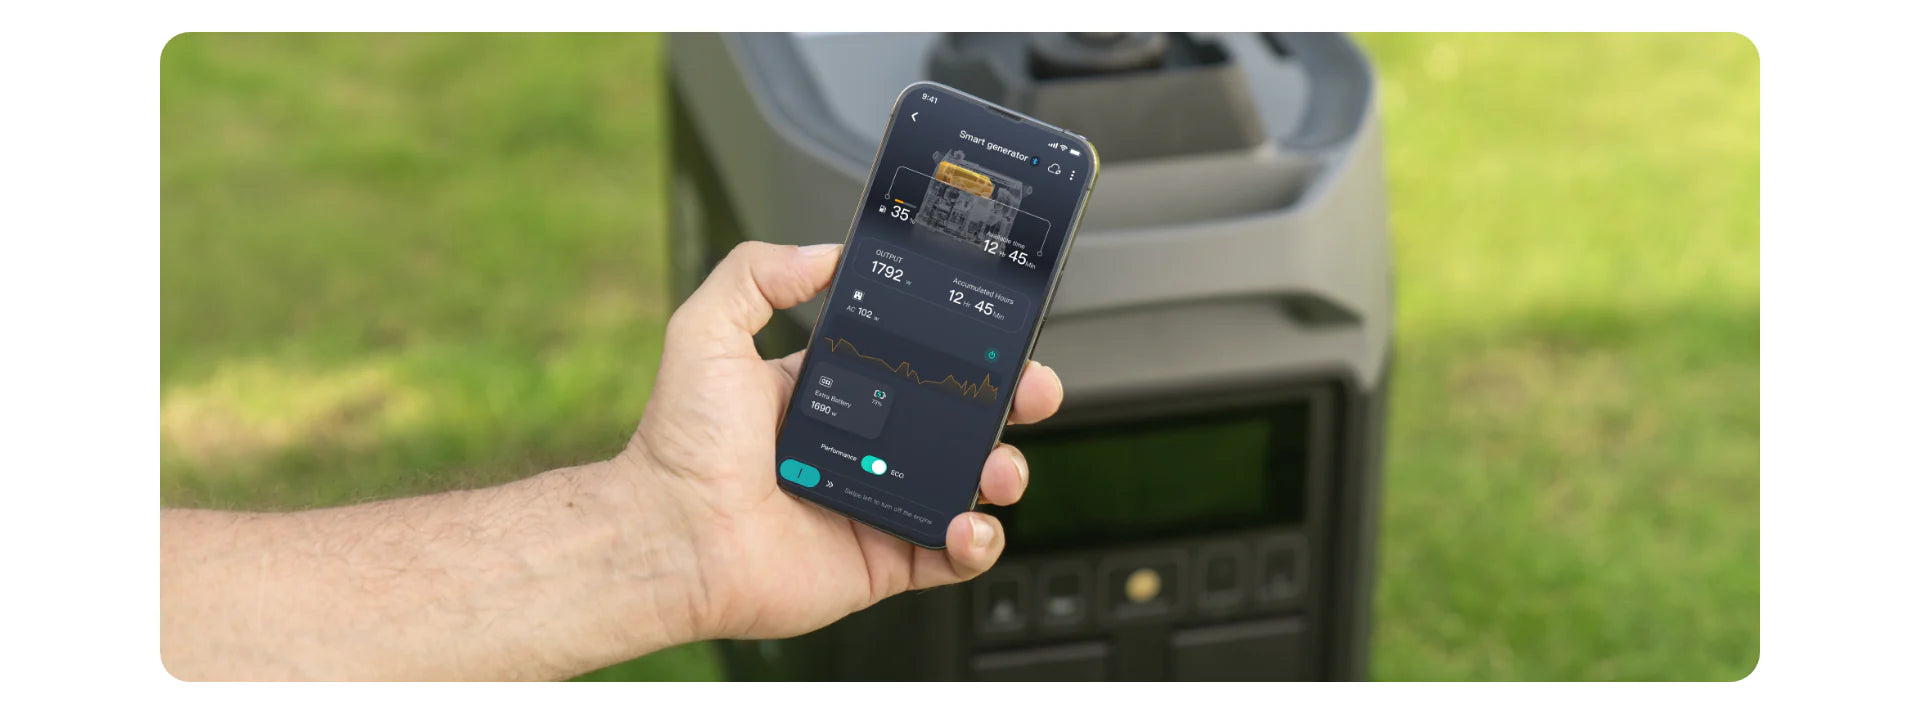 EcoFlow DELTA Pro + Smart Generator (Dual Fuel) Smart Phone App